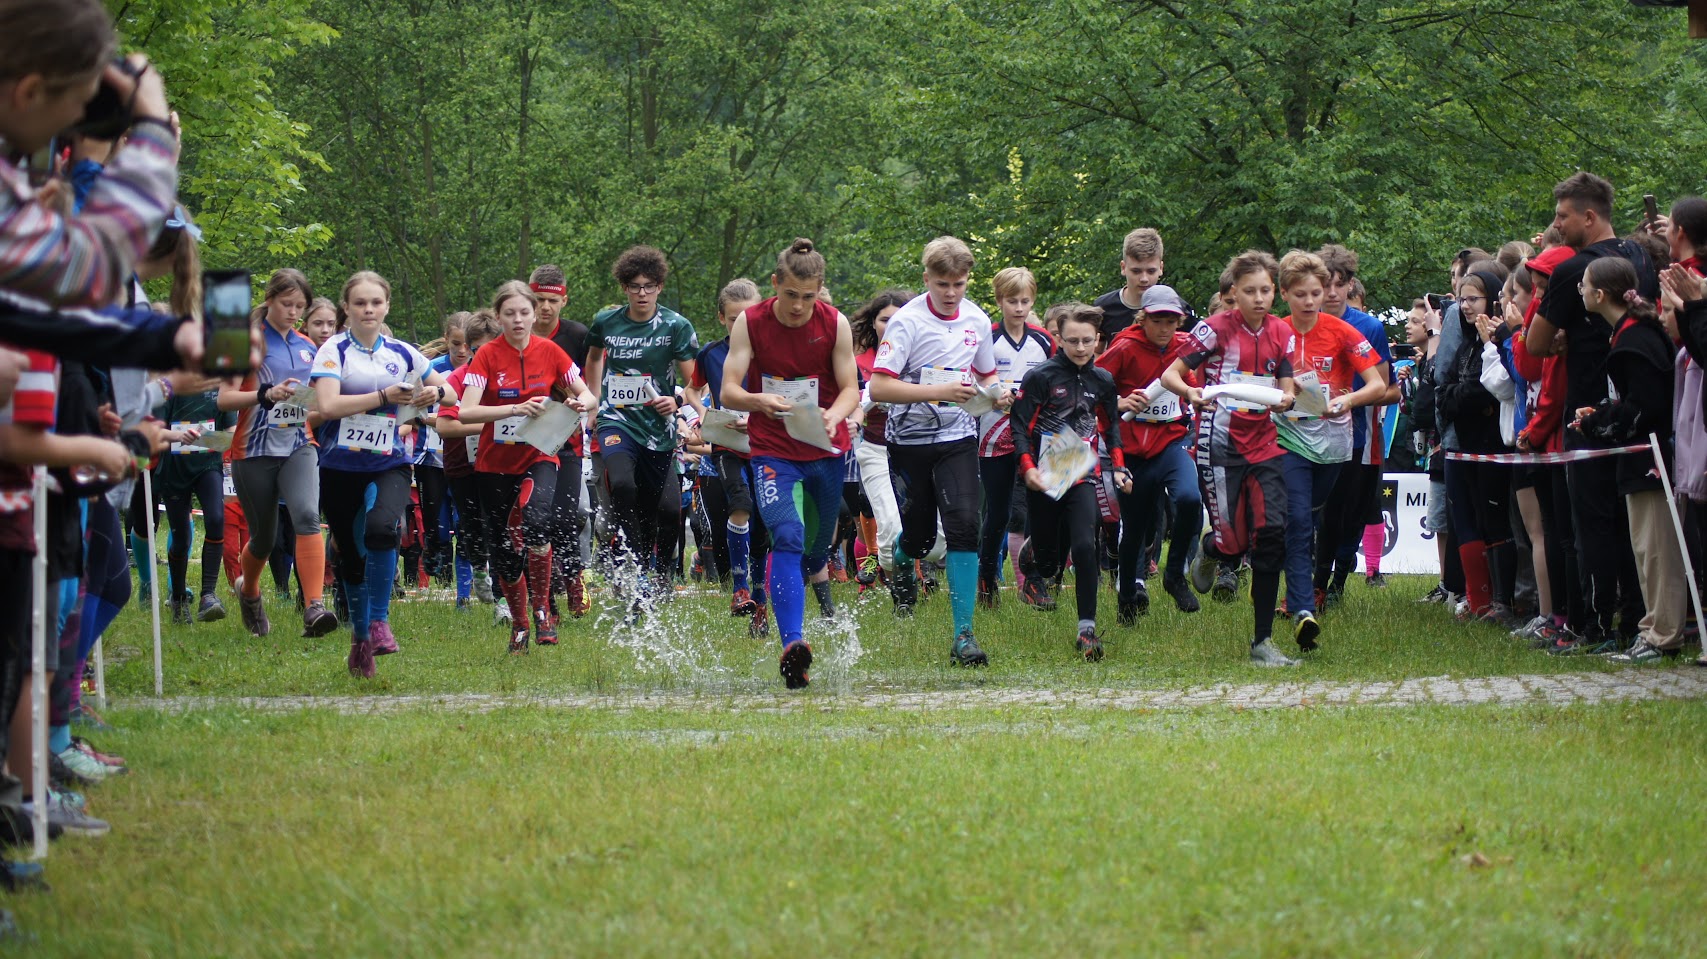 Fot. Ola Becmer. Zdjęcie przedstawia zawodników w Arboretum Leśnym na trasie biegu.